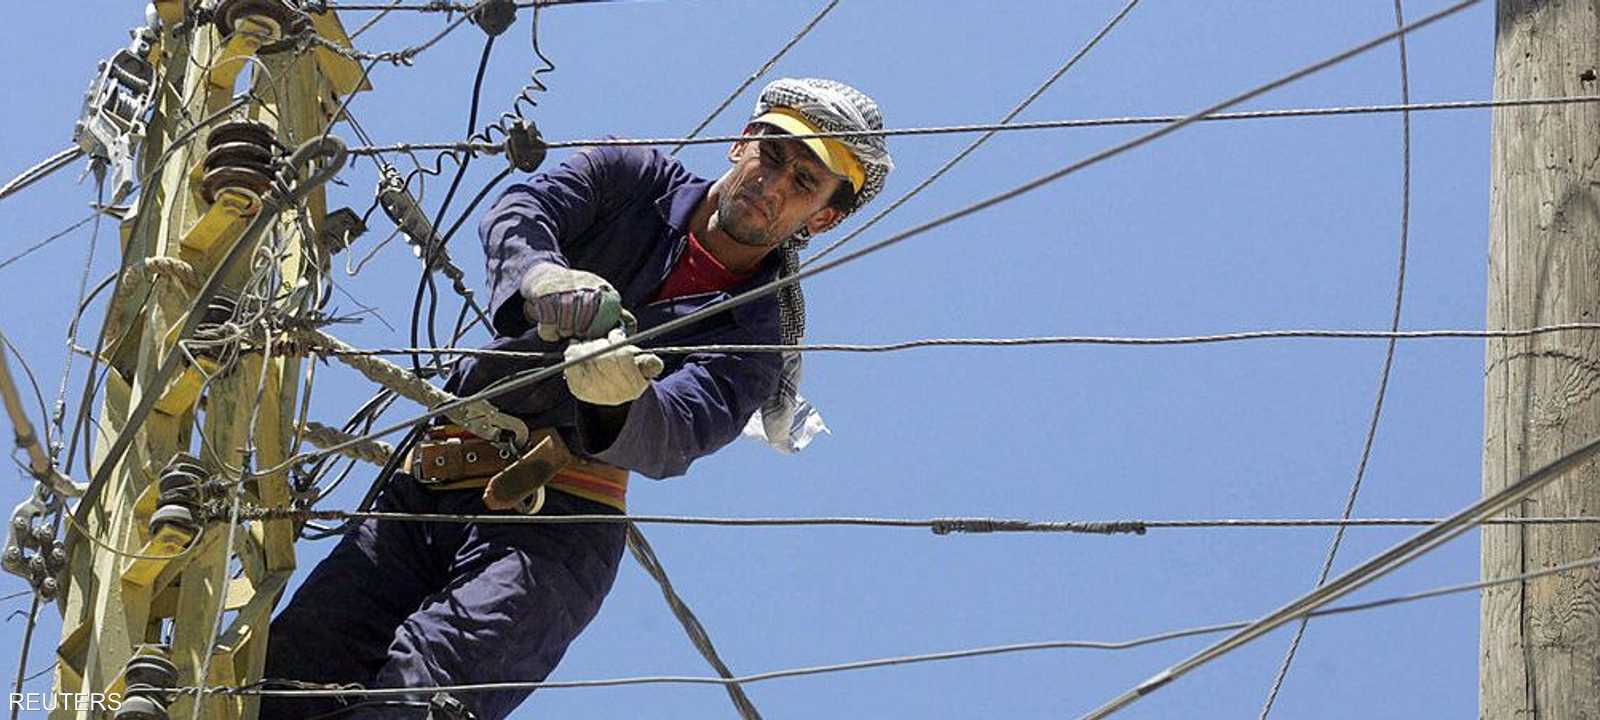 لبنان يعاني أزمة كهرباء حادة